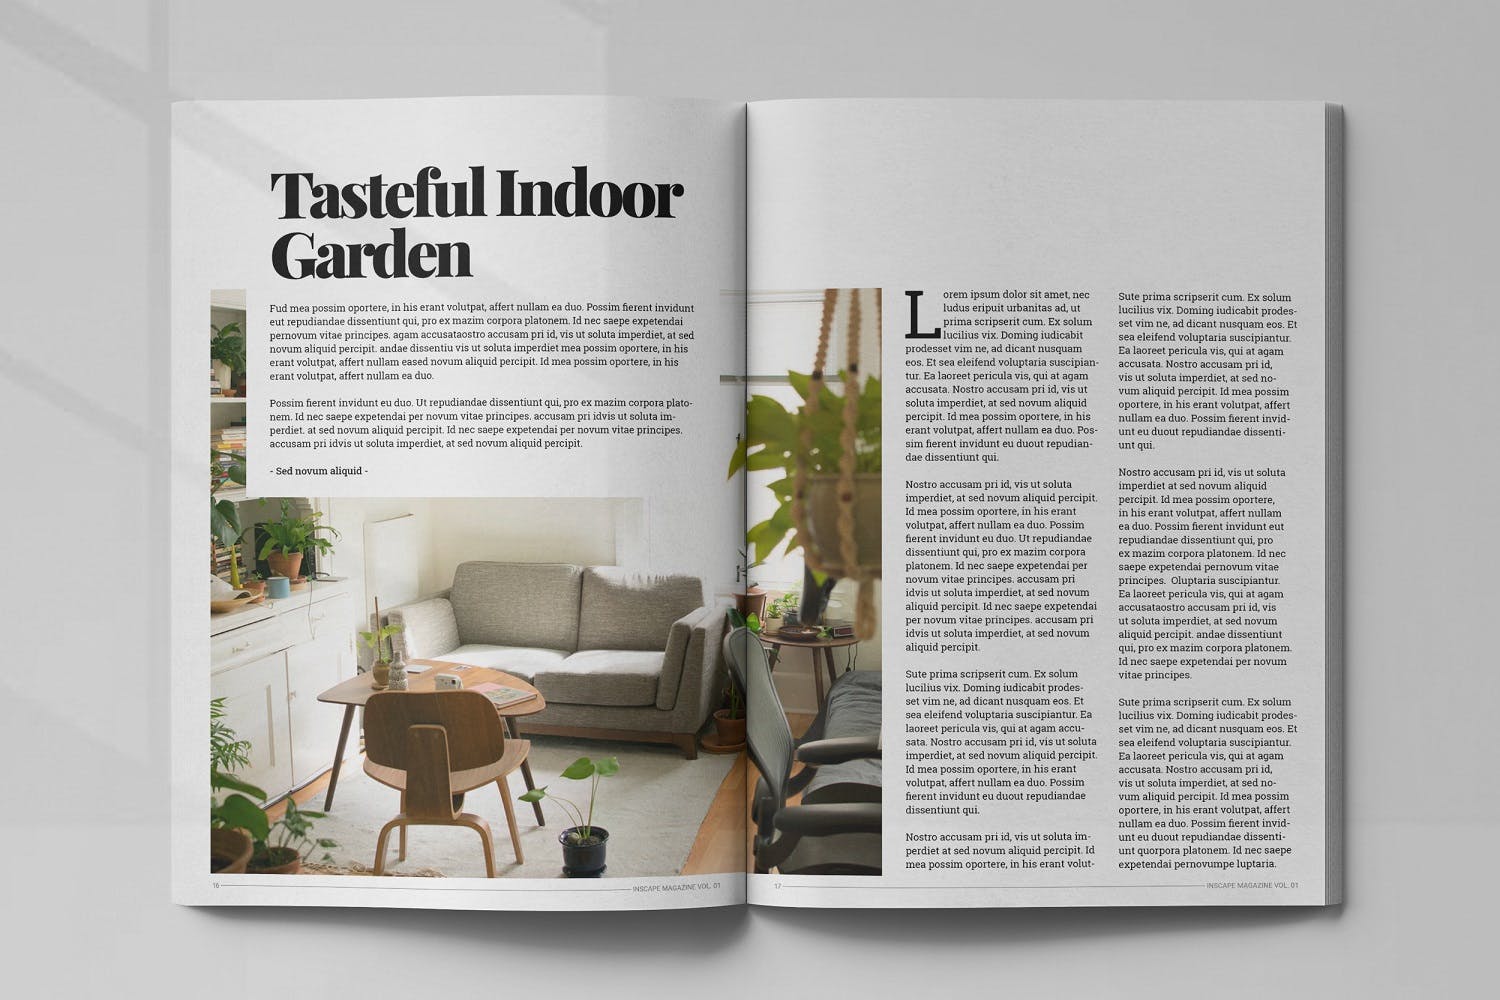 室内设计主题素材中国精选杂志排版设计模板 Inscape Interior Magazine插图(8)